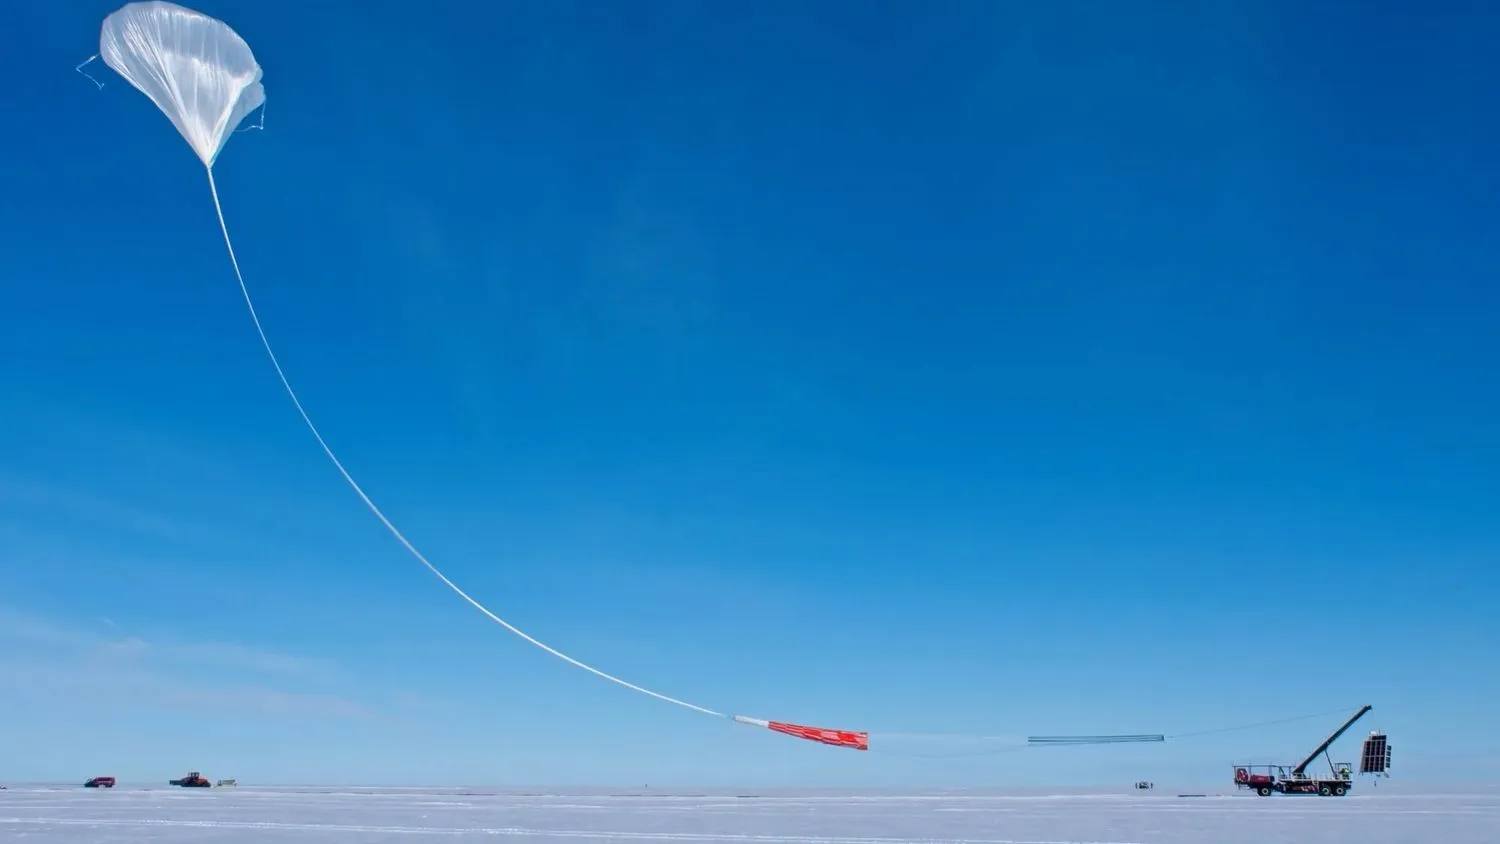 Ein großer weißer Wissenschaftsballon startet von einem flachen, schneebedeckten Fleck Erde in den blauen Himmel